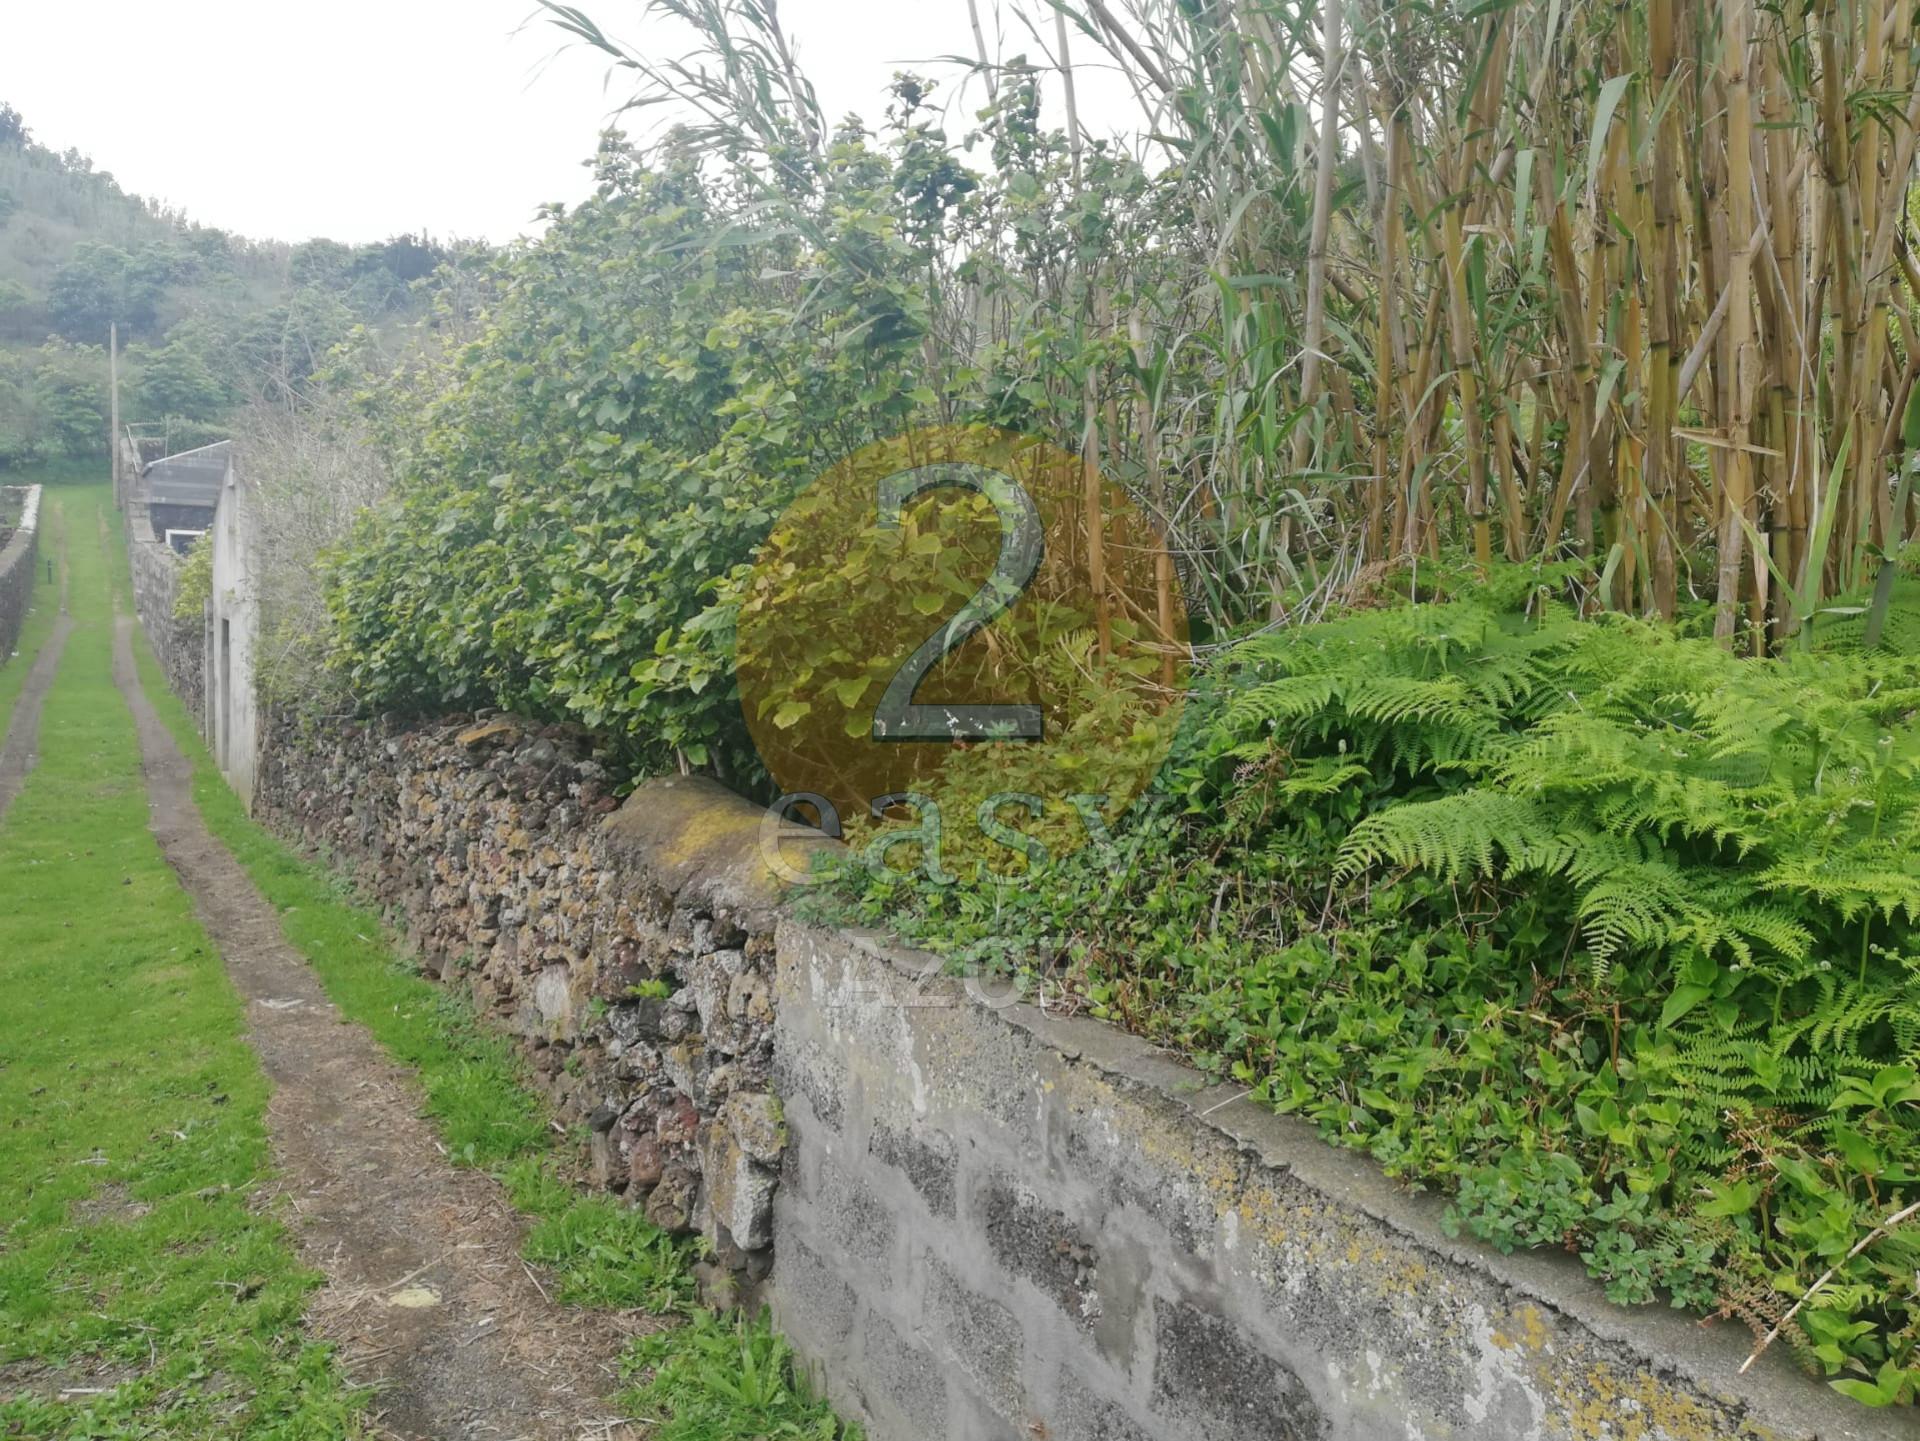 Terreno rústico situado na Caloura, freguesia de Água de Pau.